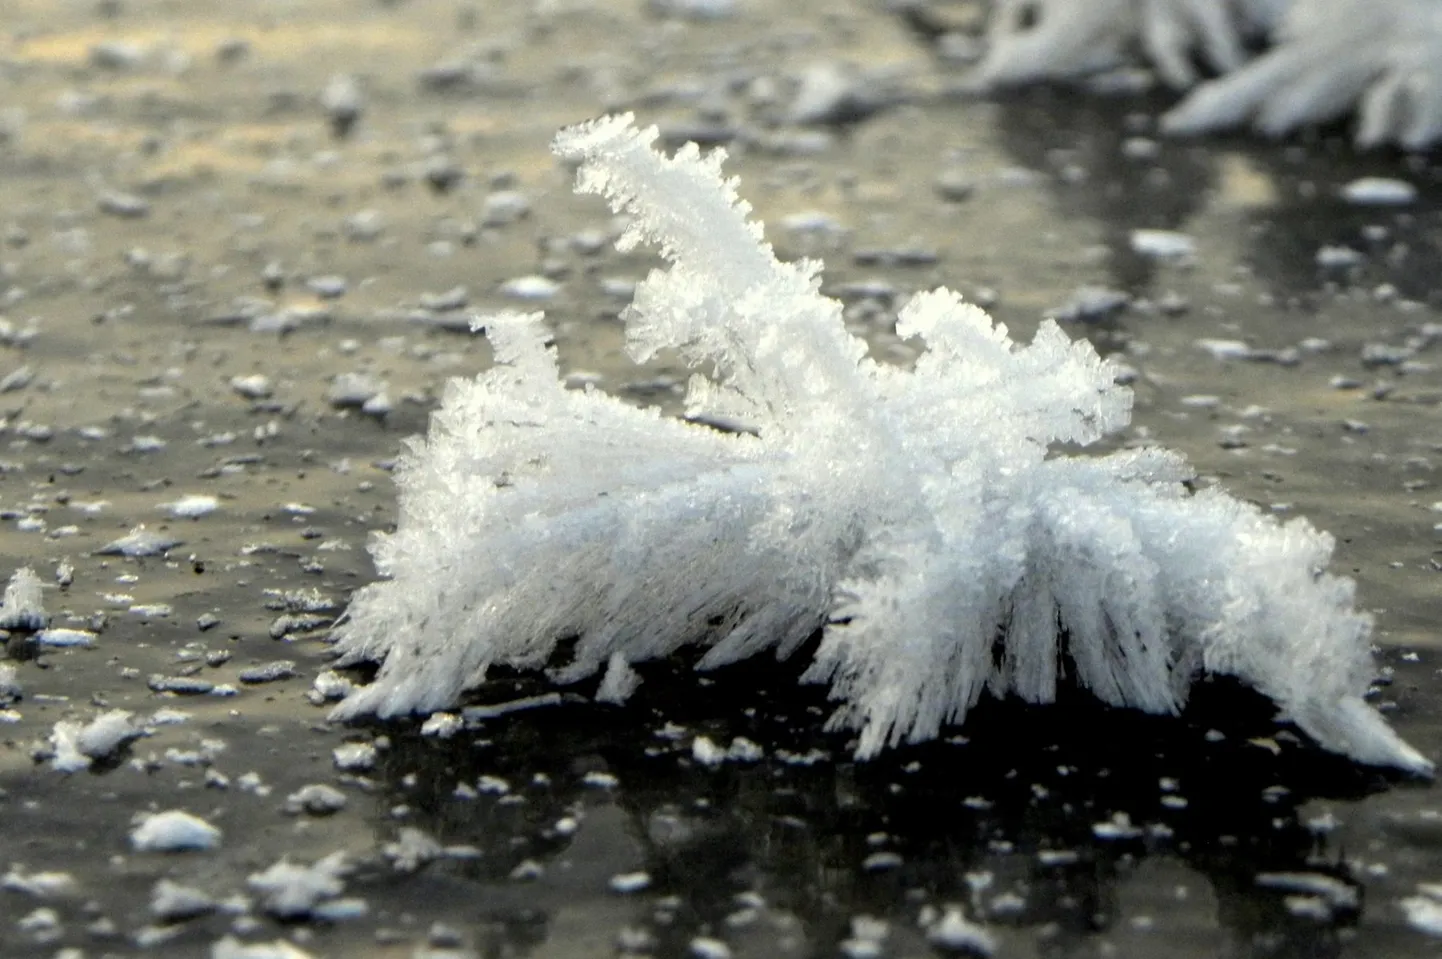 Kristalliline härmatis Viljandi järve jääl 2. detsembril.